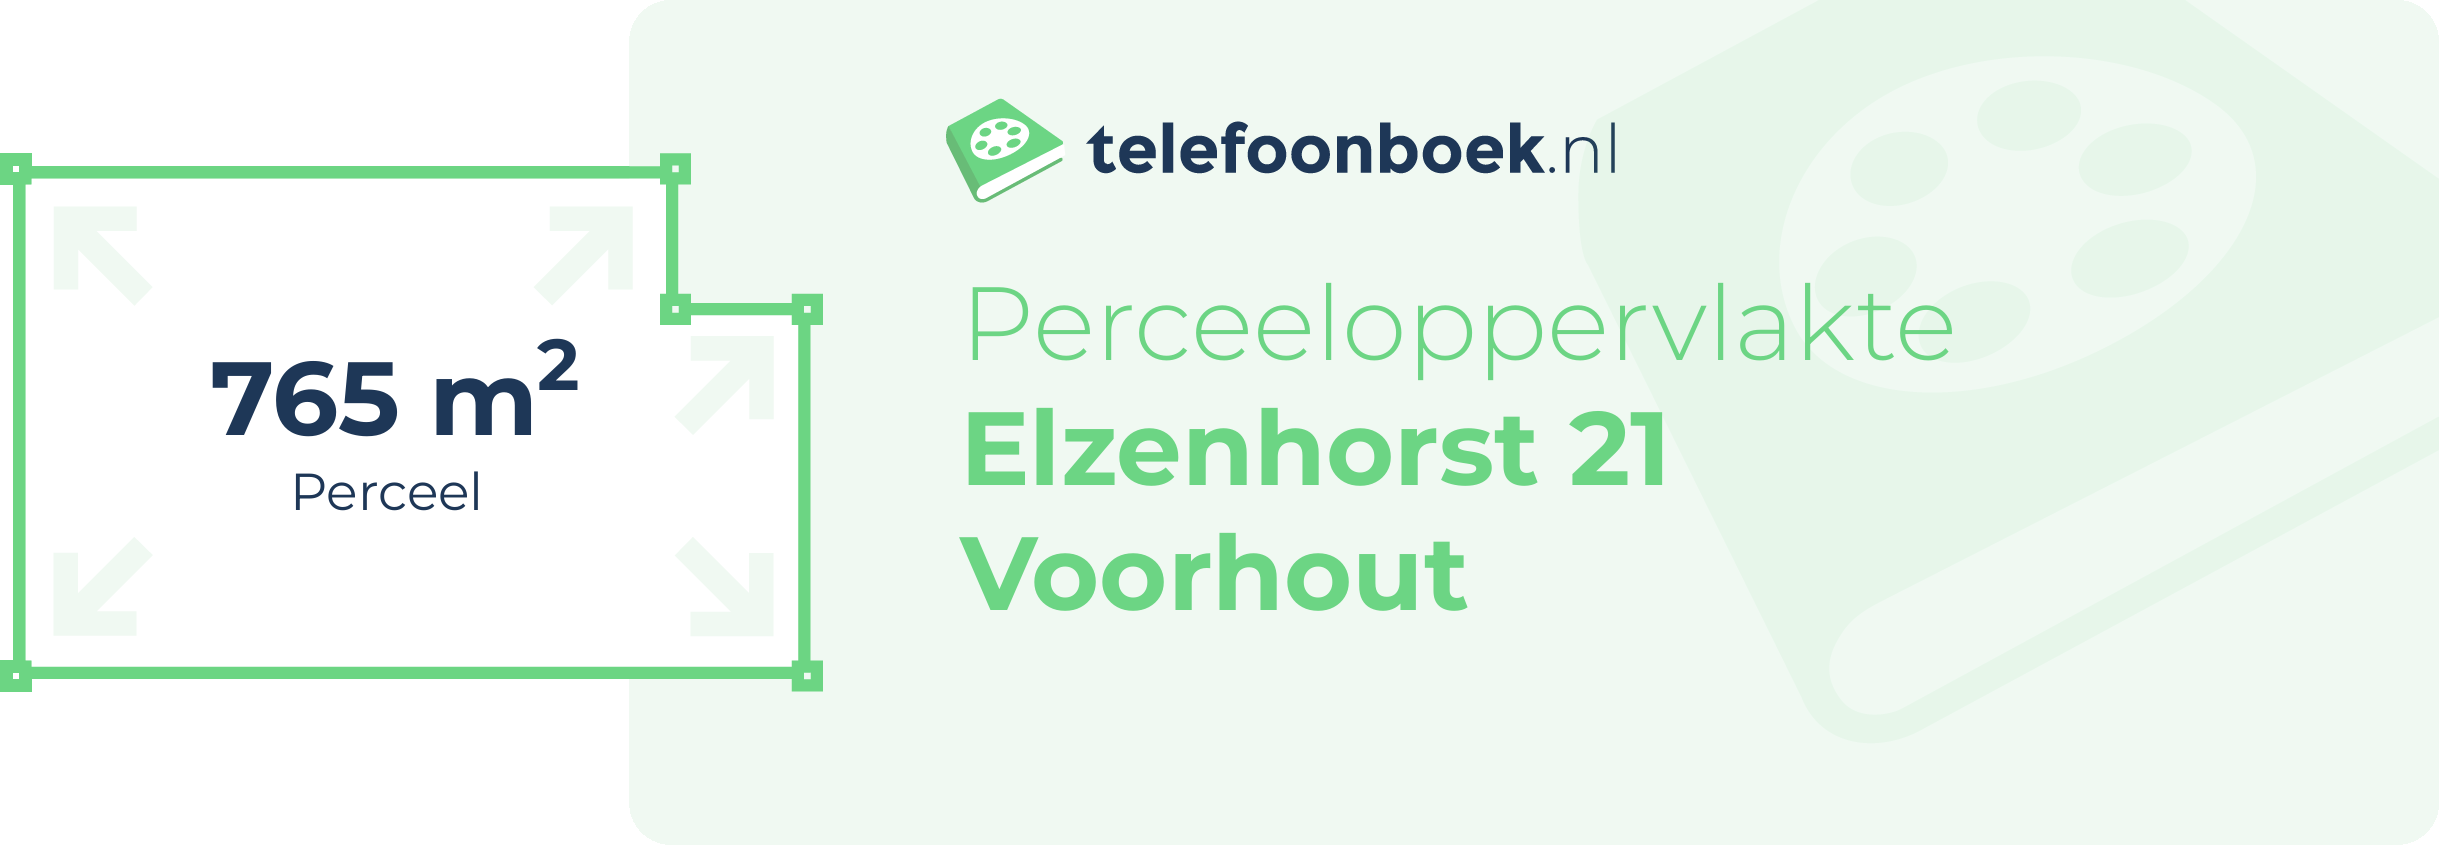 Perceeloppervlakte Elzenhorst 21 Voorhout